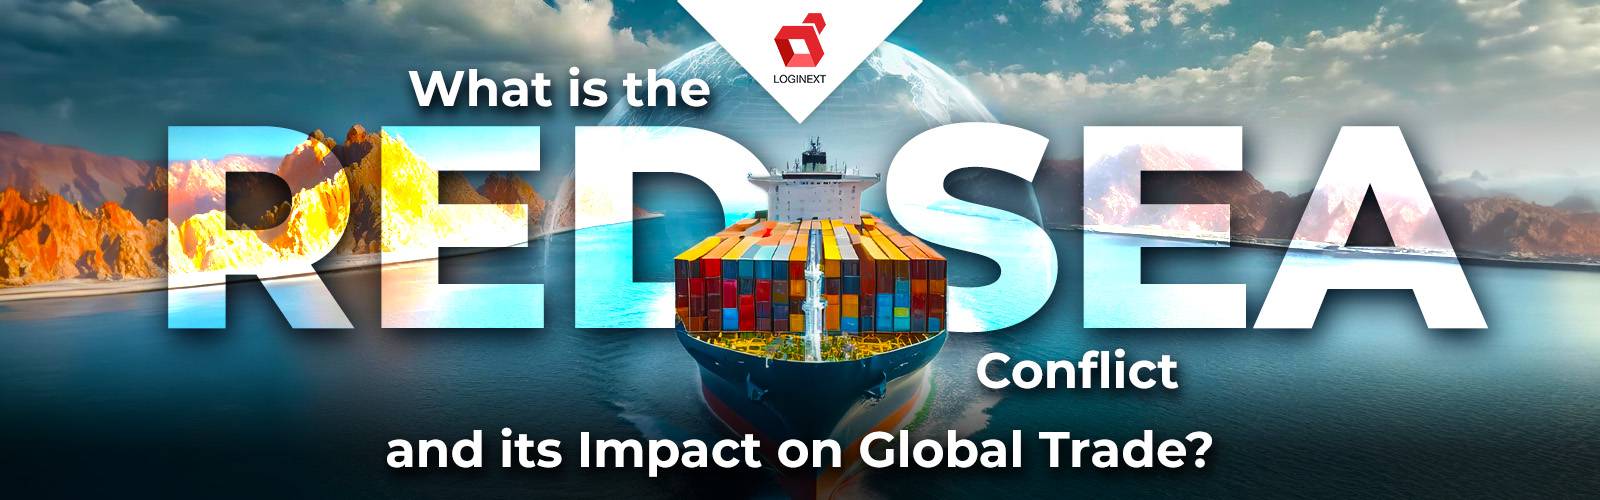 Hva er Rødehavskonflikten og dens innvirkning på global handel?